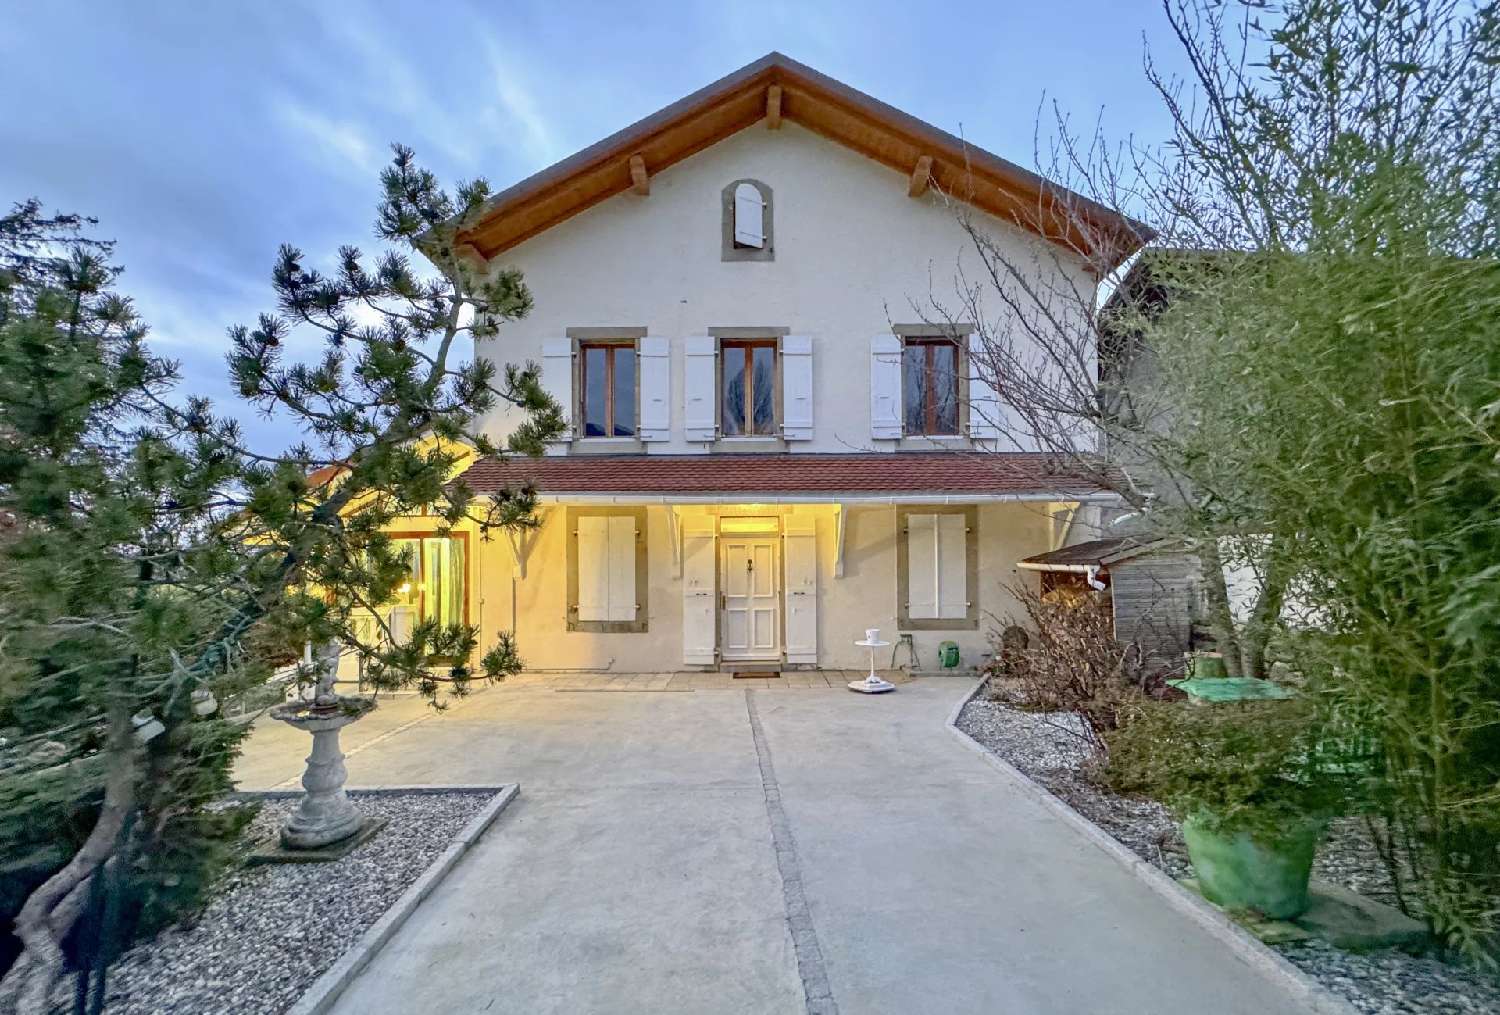  à vendre villa Neydens Haute-Savoie 1